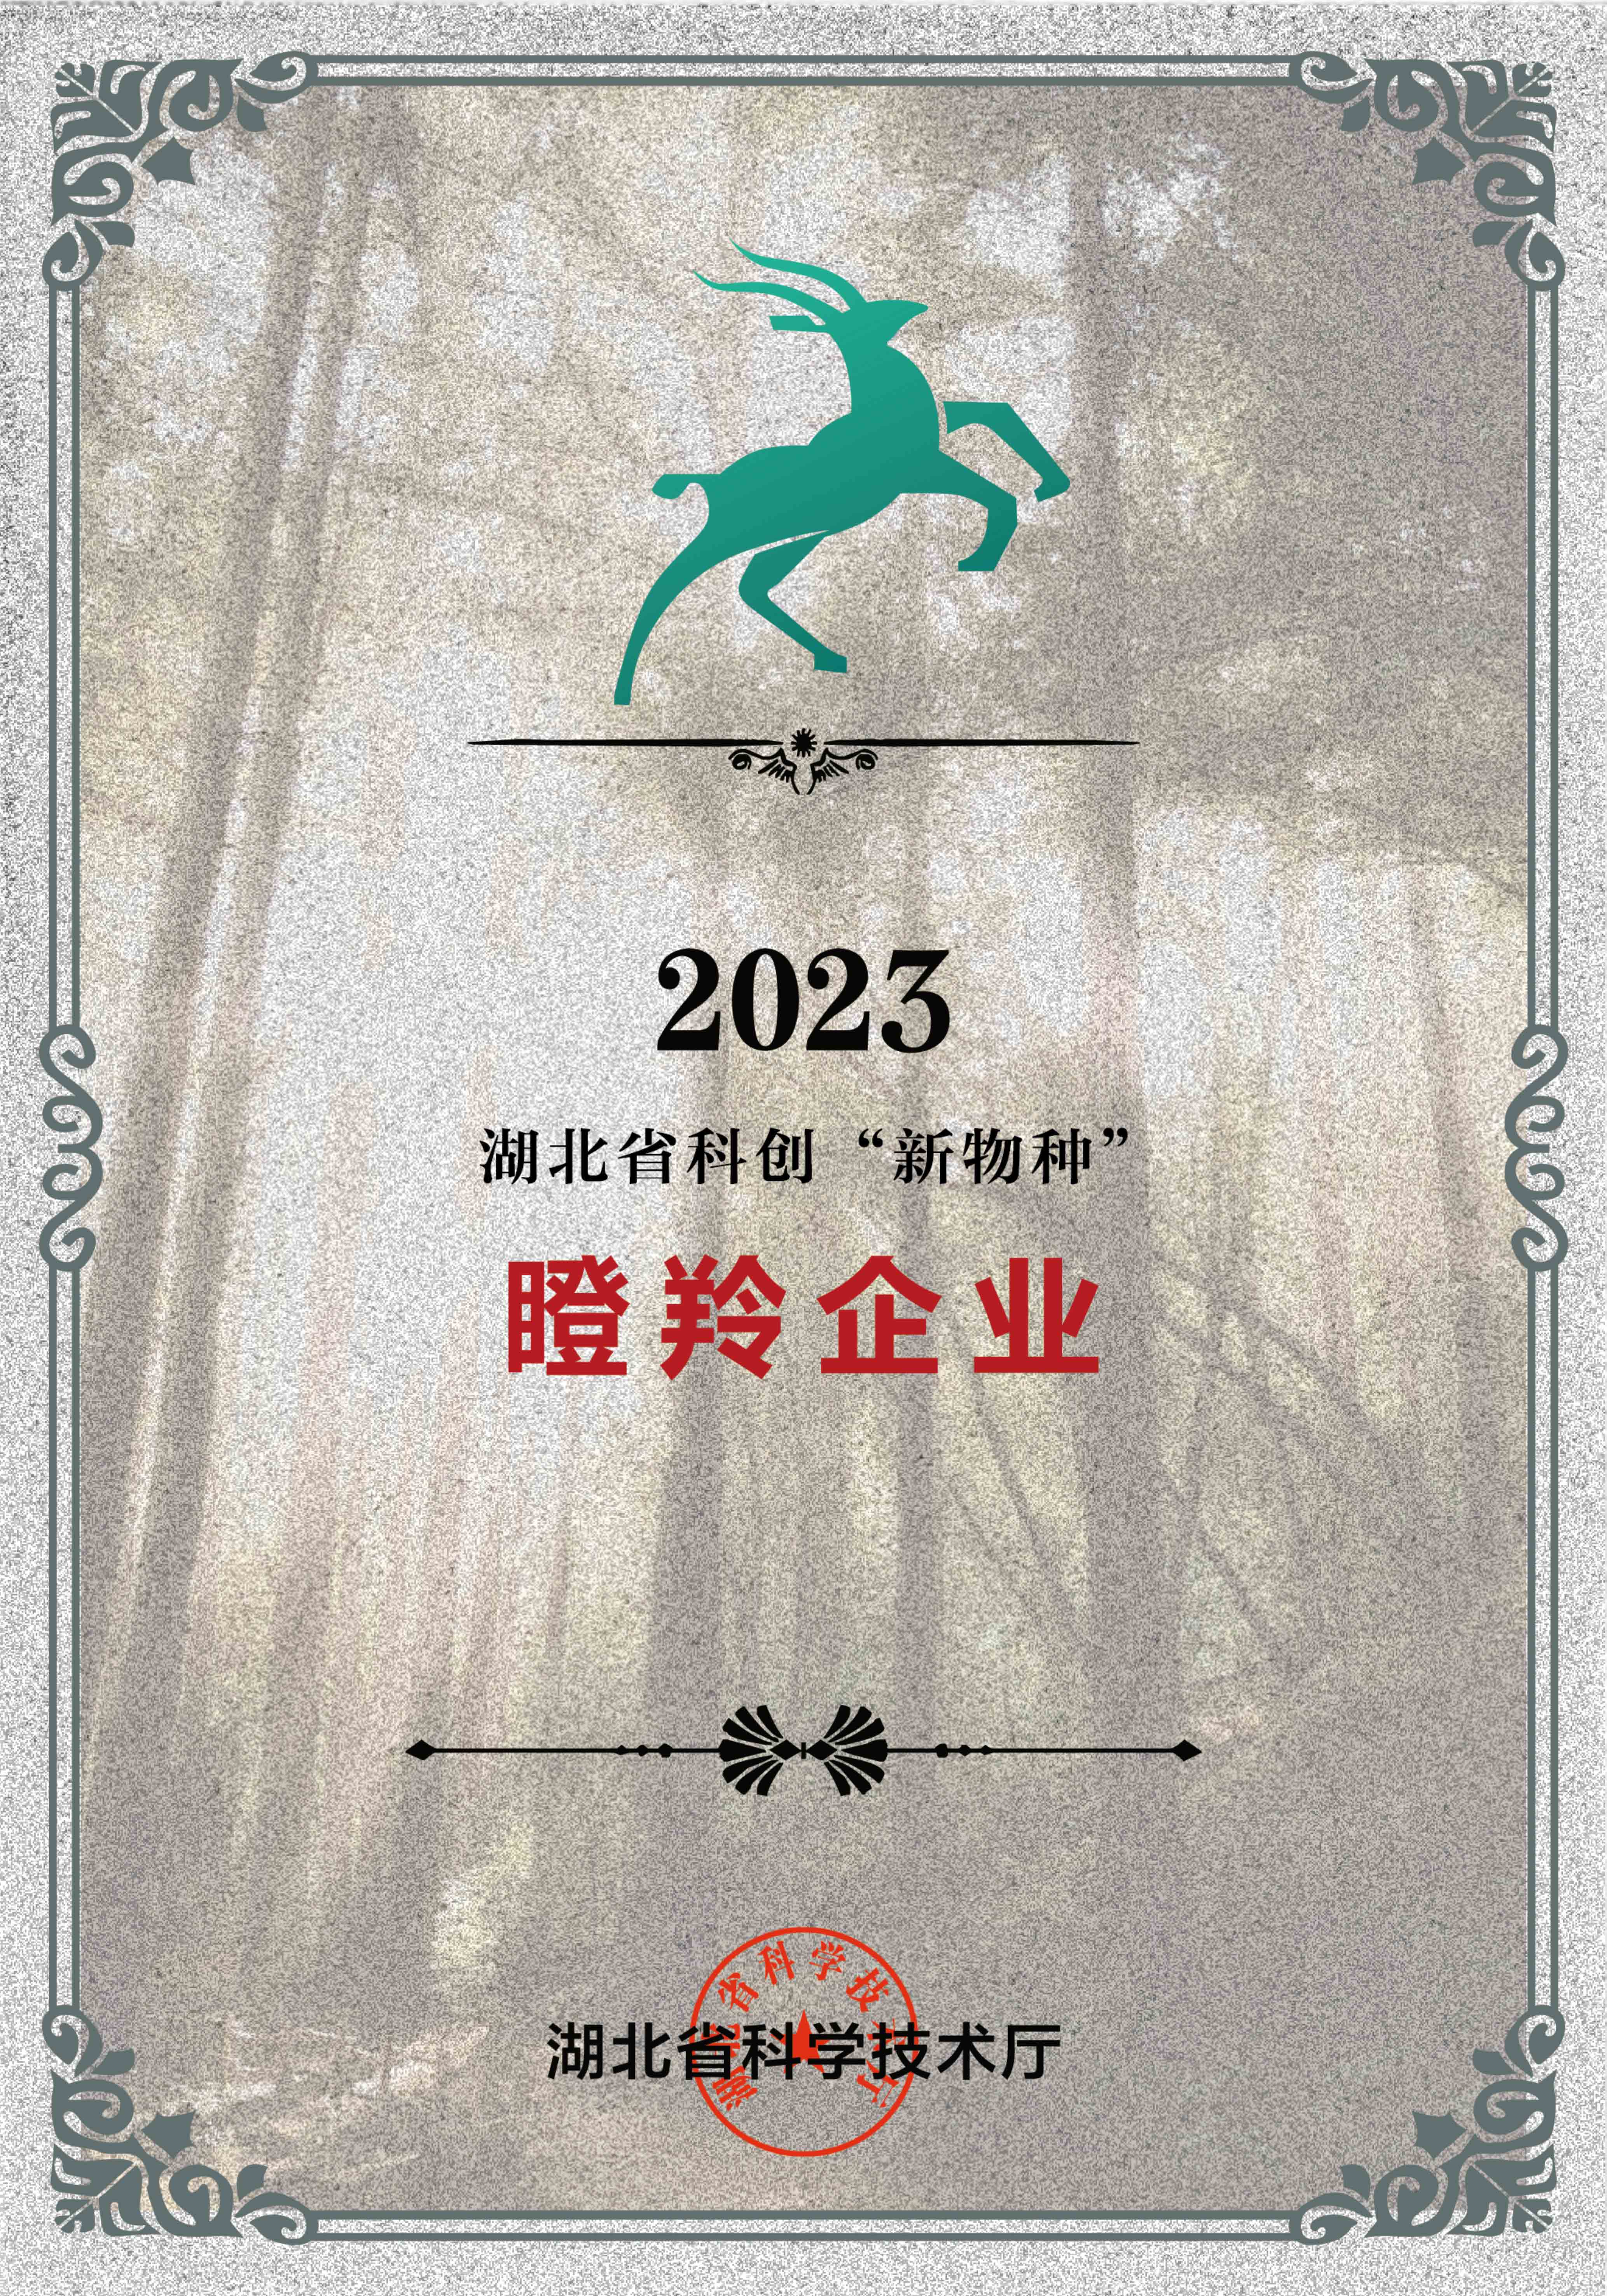 2023科创“新物种”小图.jpg